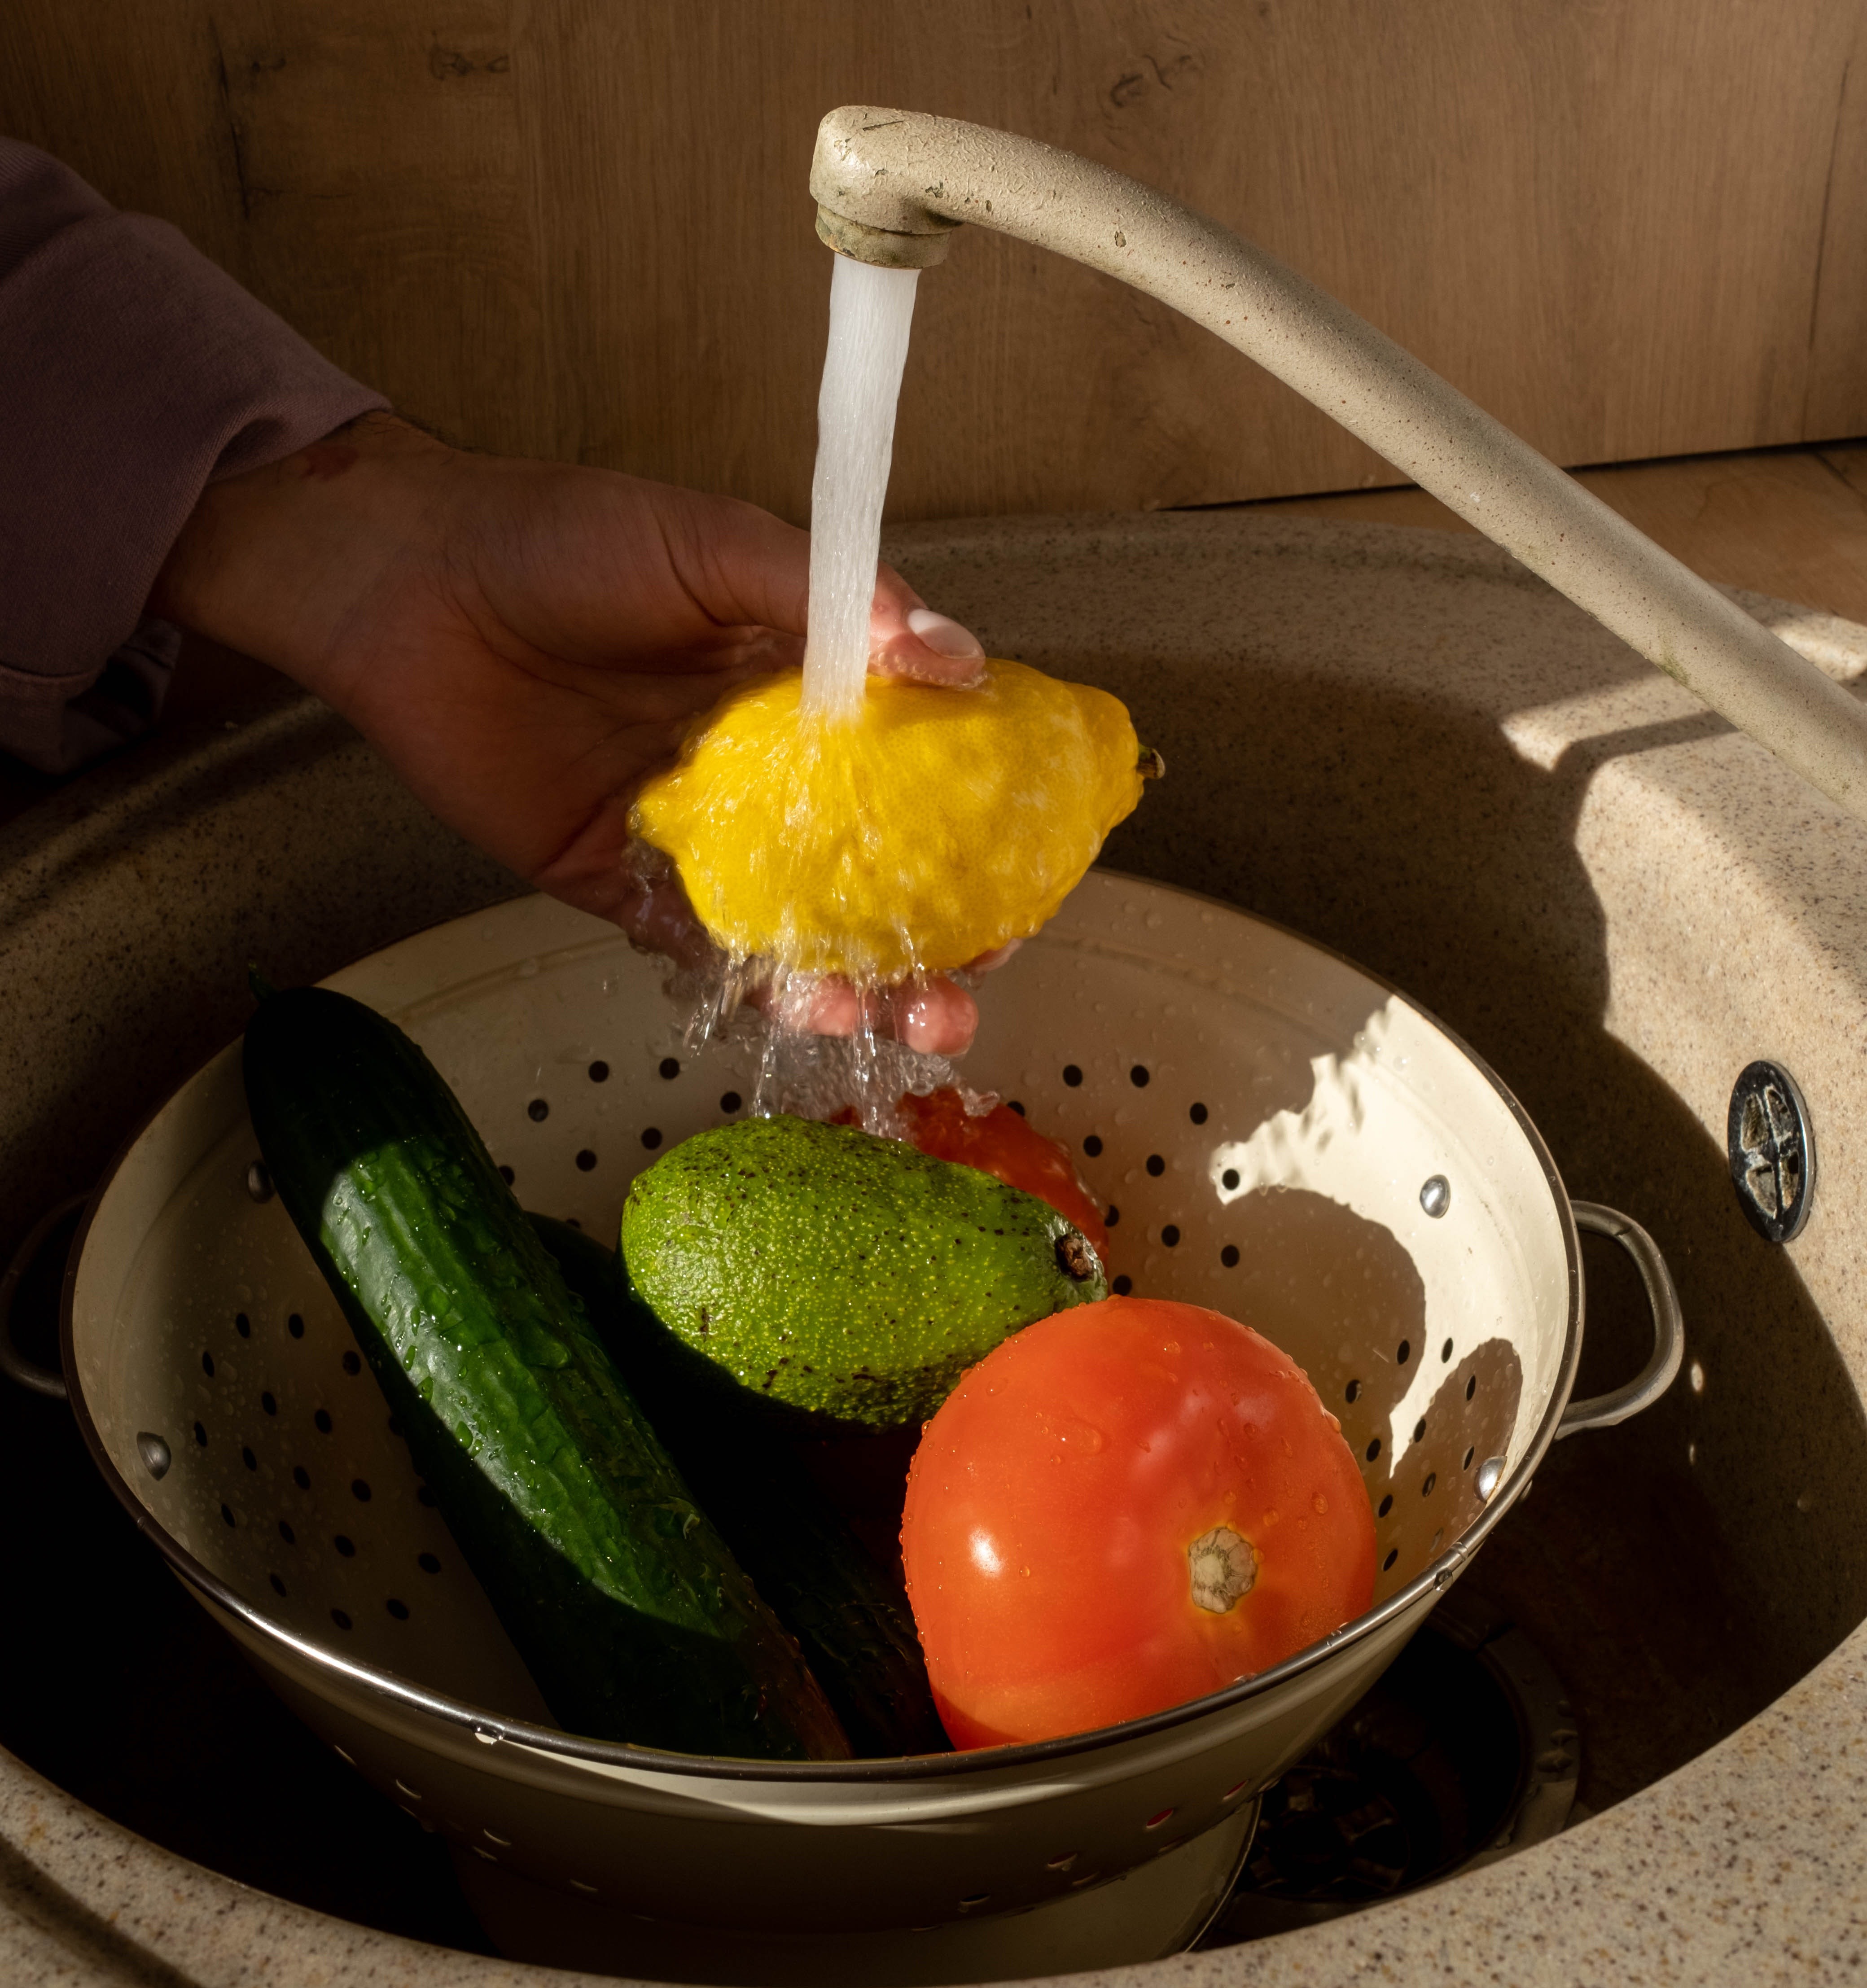 washing vegetables, castile soap uses